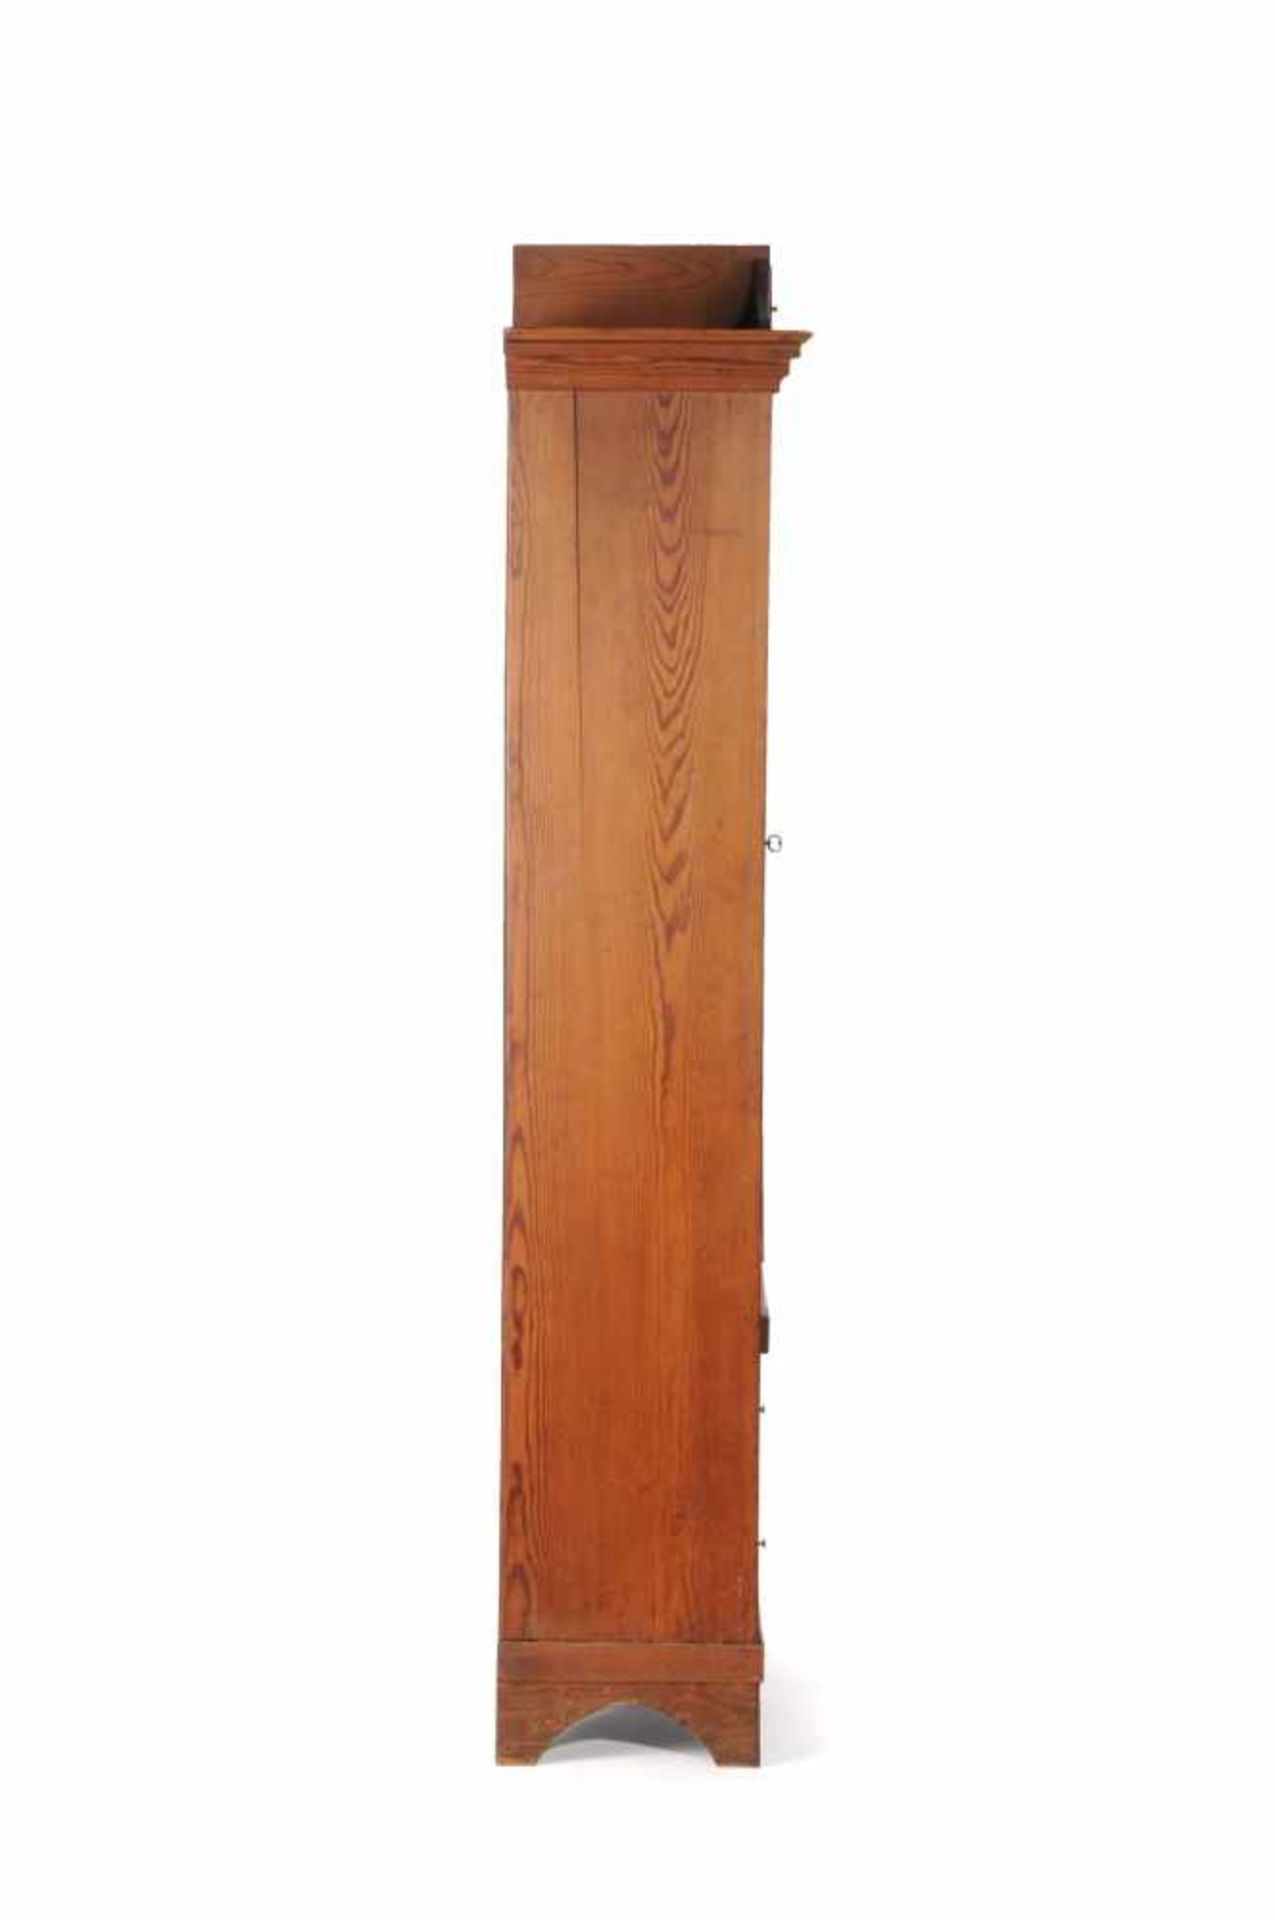 Vitrinenschrank. Um 1860/1870.Nadelholz. Hochrechteckiger, zweitüriger Korpus, eine Tür als - Bild 2 aus 2